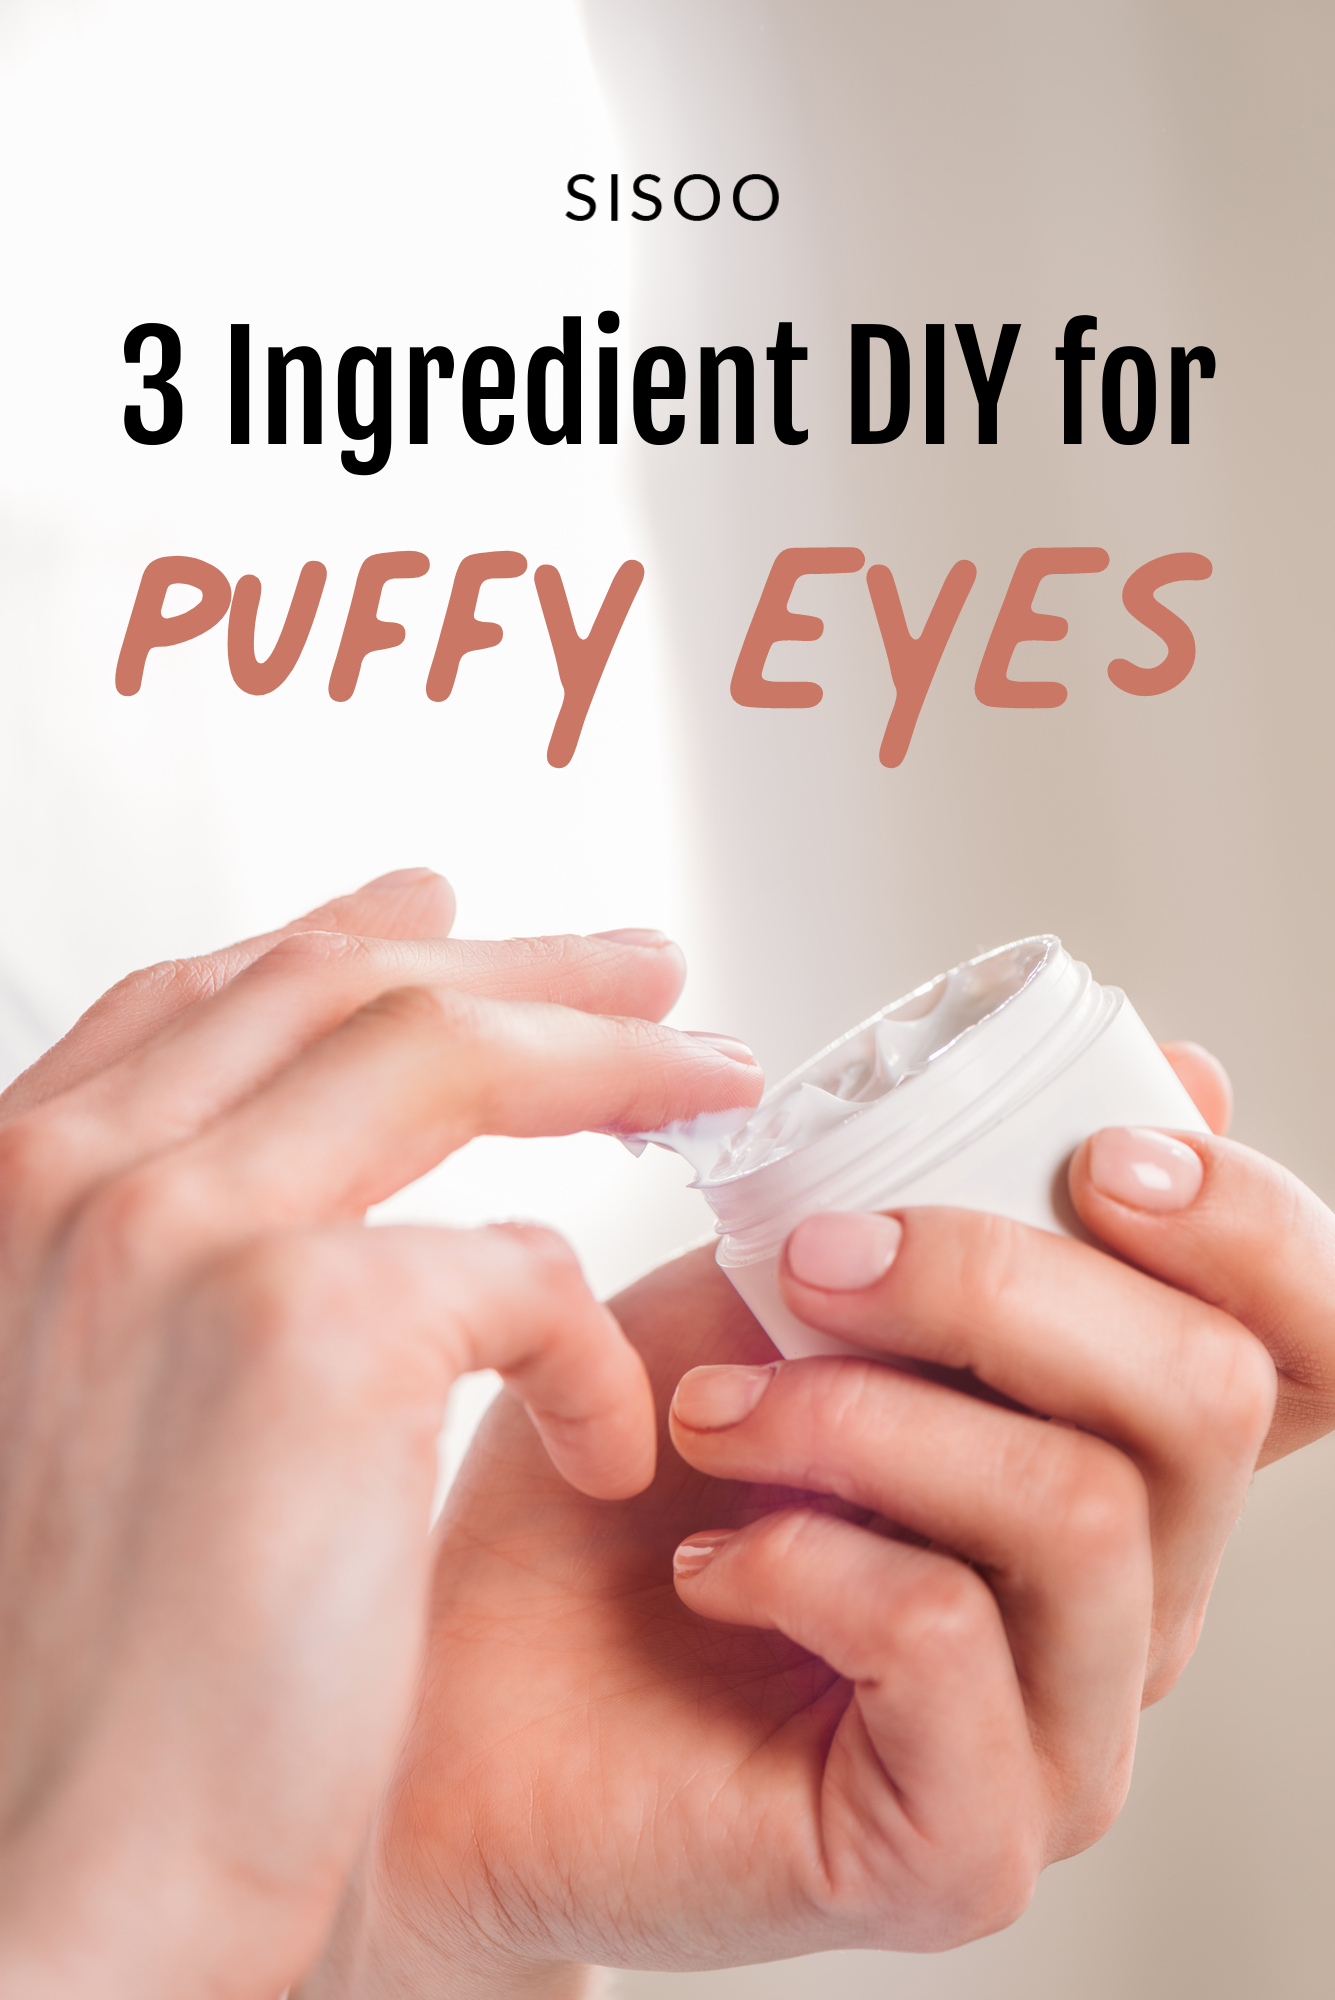 DIY eye cream